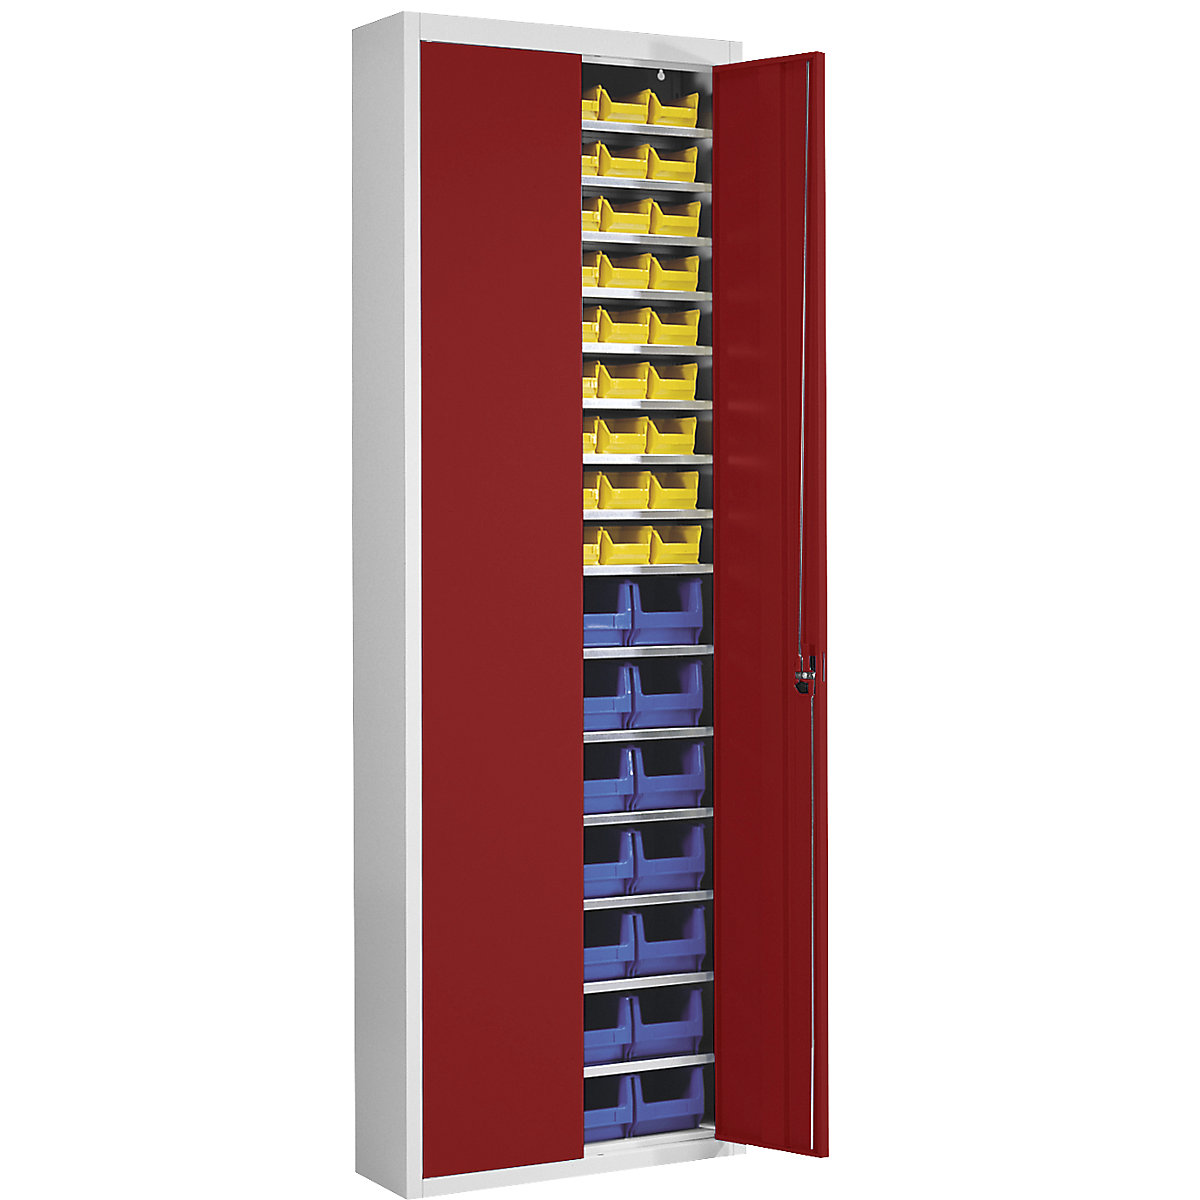 Magazinschrank mit Sichtlagerkästen mauser, HxBxT 2150 x 680 x 280 mm, zweifarbig, Korpus grau, Türen rot, 82 Kästen-4